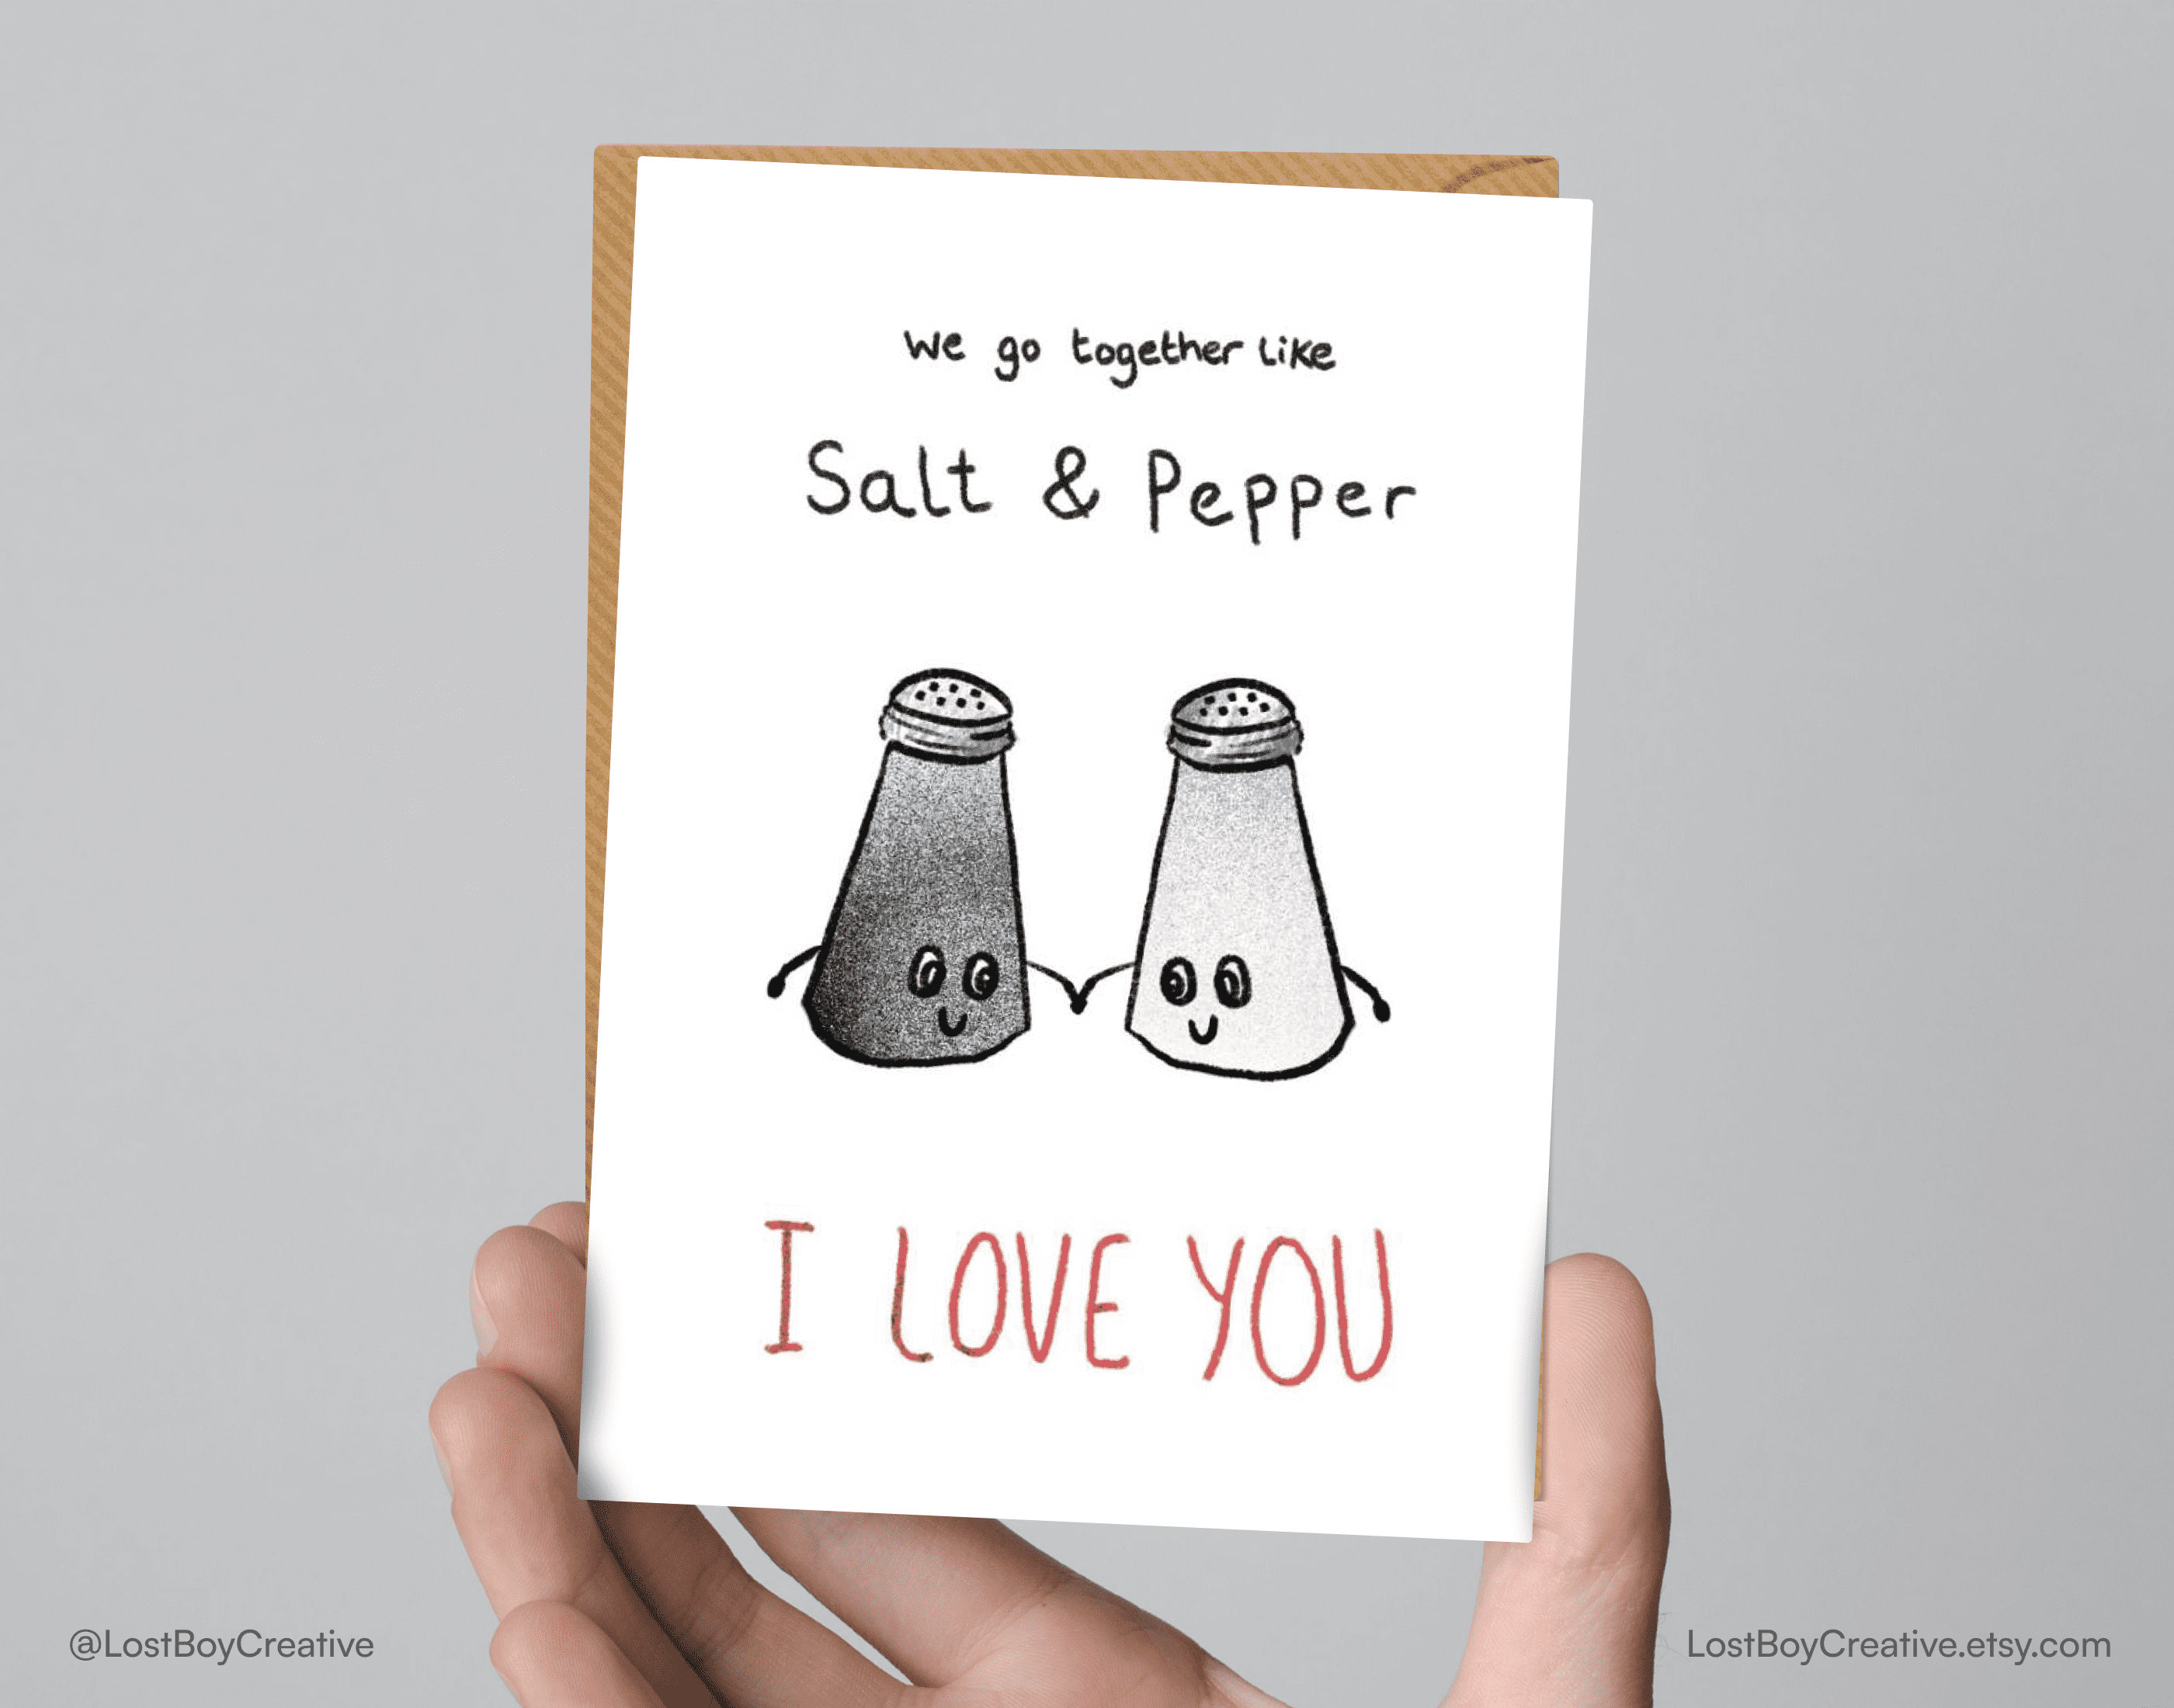 Personalizado Gracioso Lindo Perfecto Par Aniversario Tarjeta Salt & Pepper